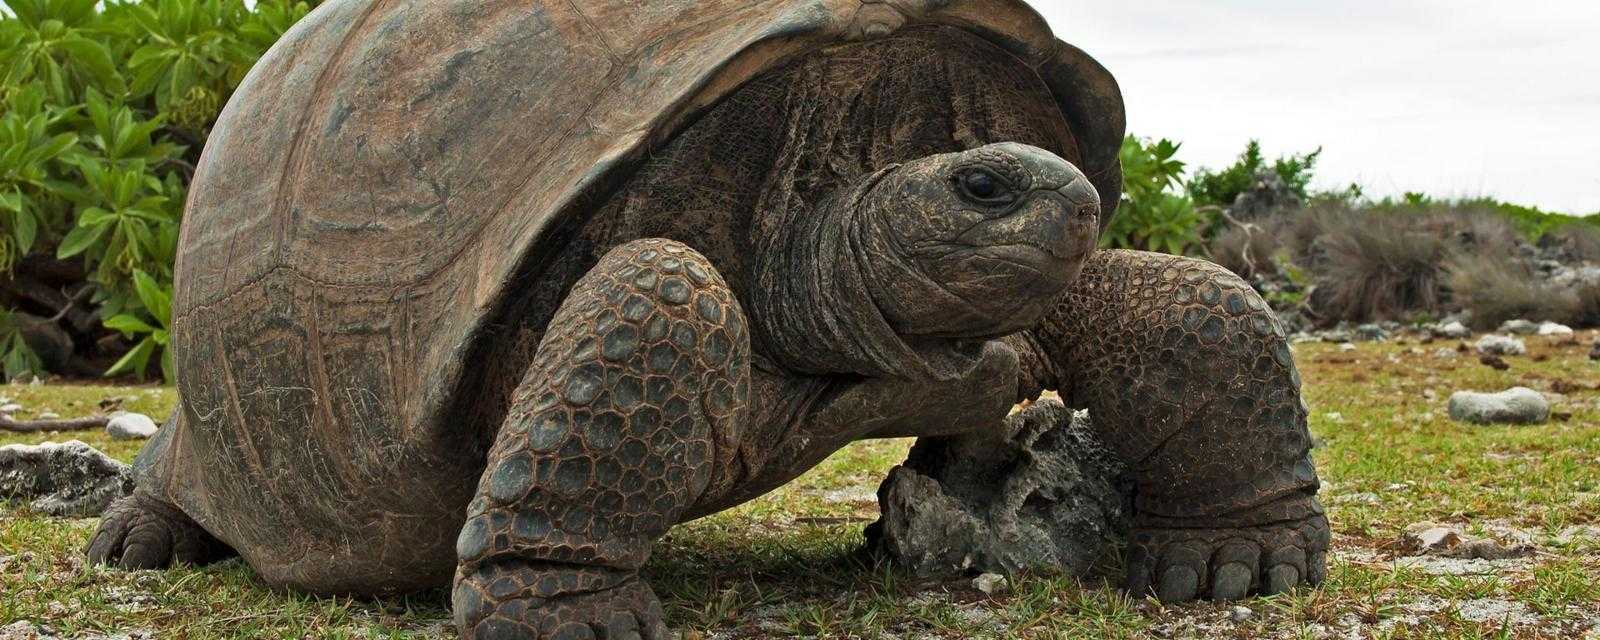 Топ 10 самые крупные черепахи в мире